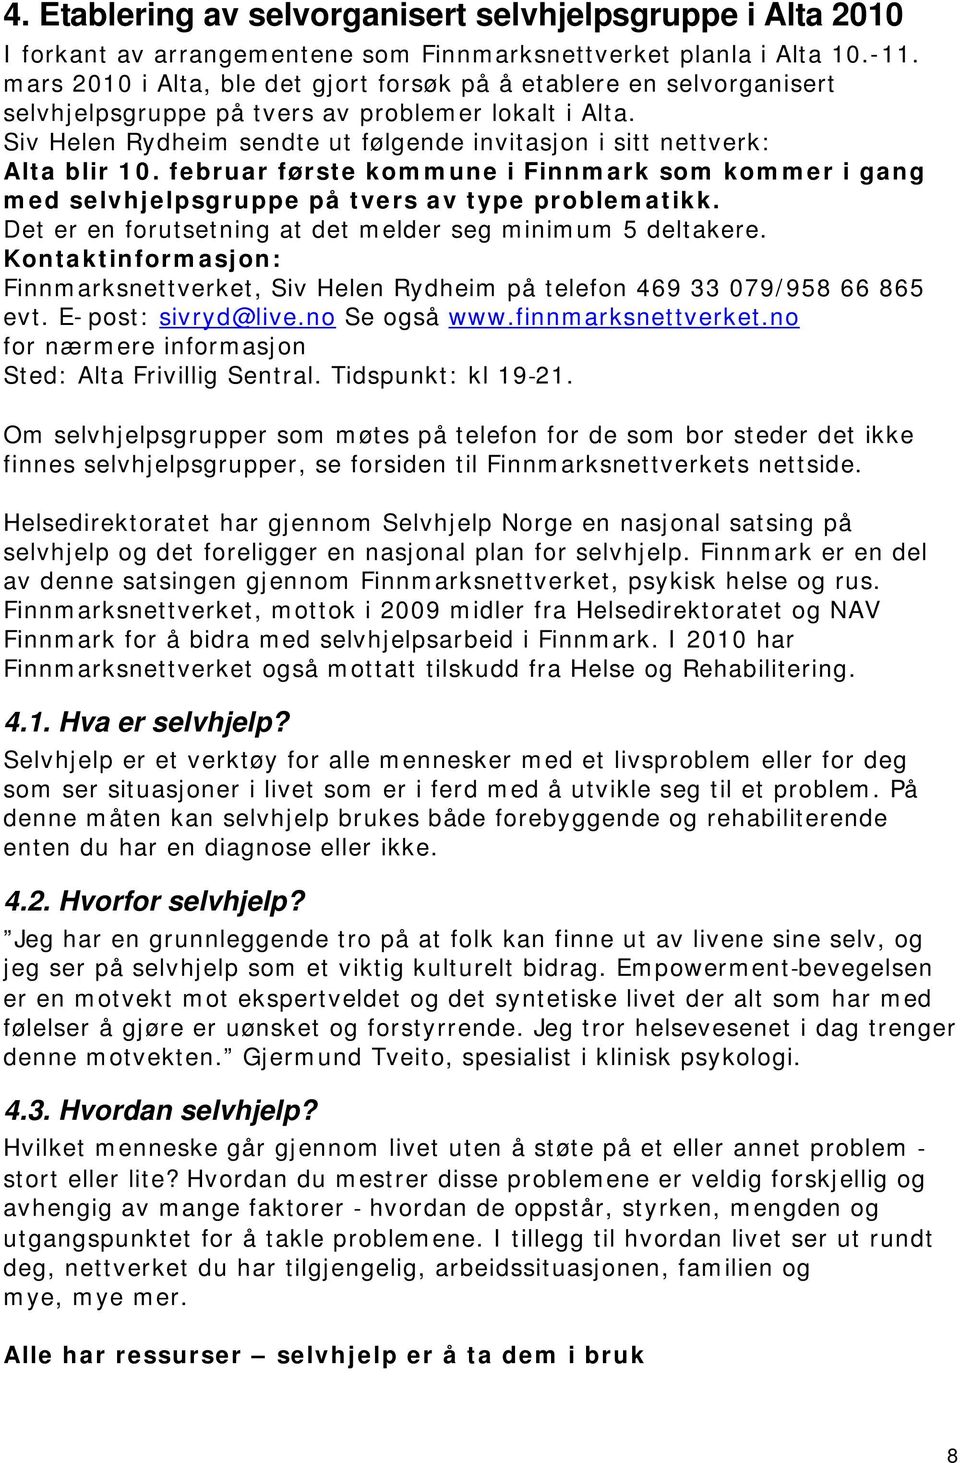 Siv Helen Rydheim sendte ut følgende invitasjon i sitt nettverk: Alta blir 10. februar første kommune i Finnmark som kommer i gang med selvhjelpsgruppe på tvers av type problematikk.